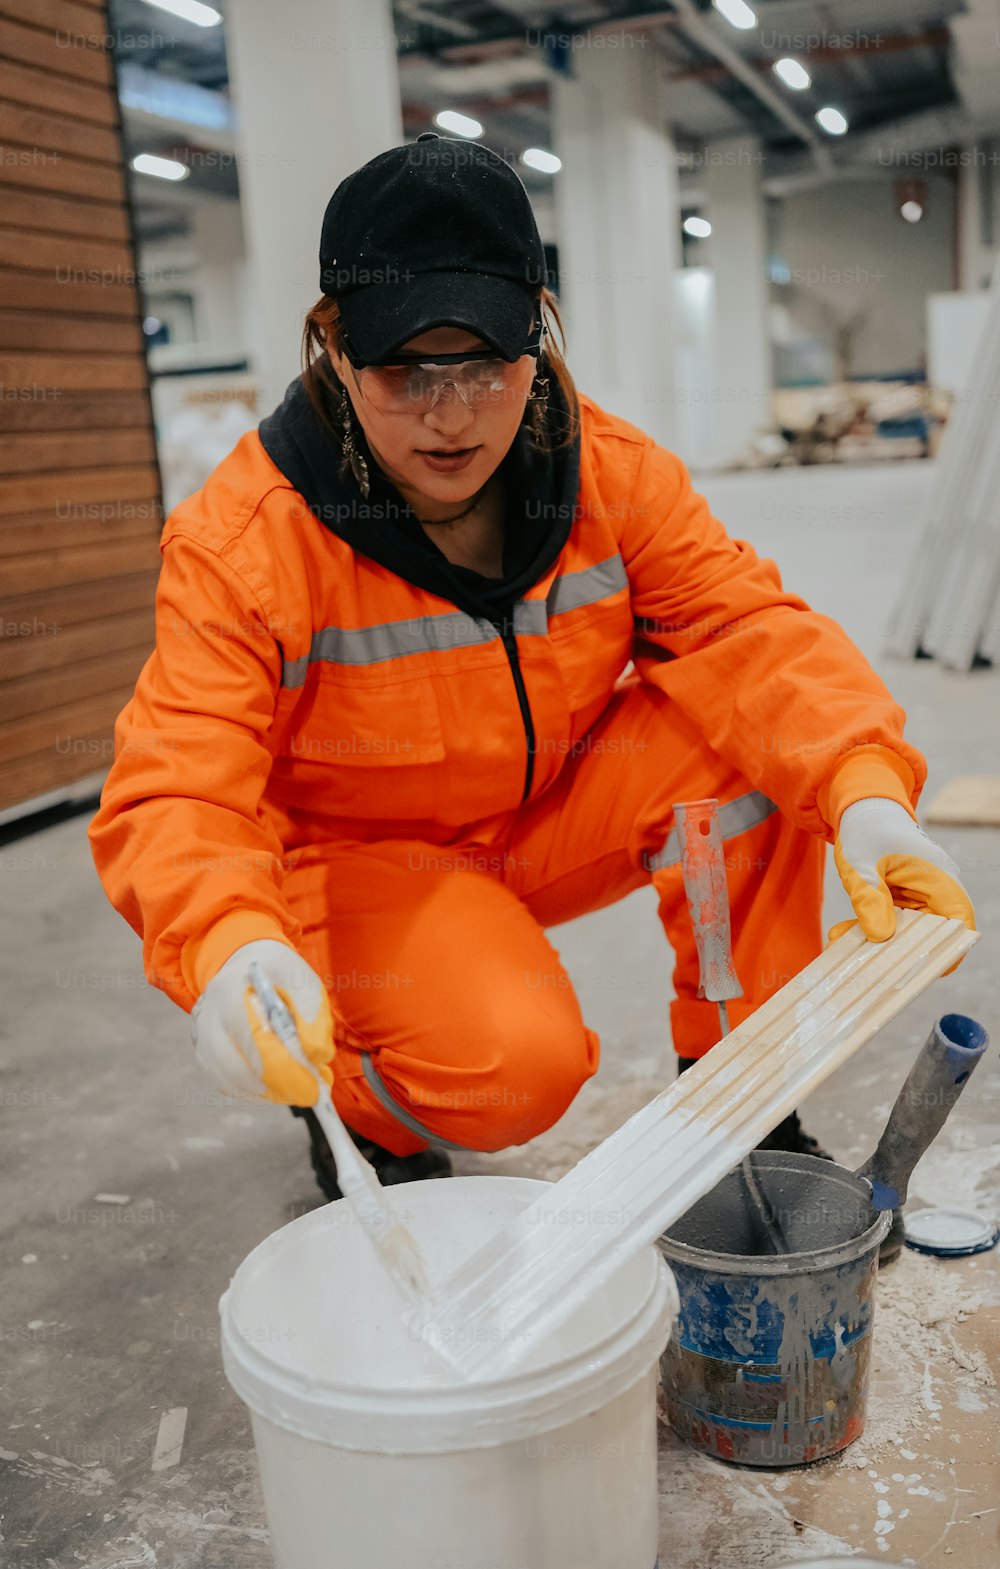 Eine Frau in einem orangefarbenen Overall putzt einen Eimer